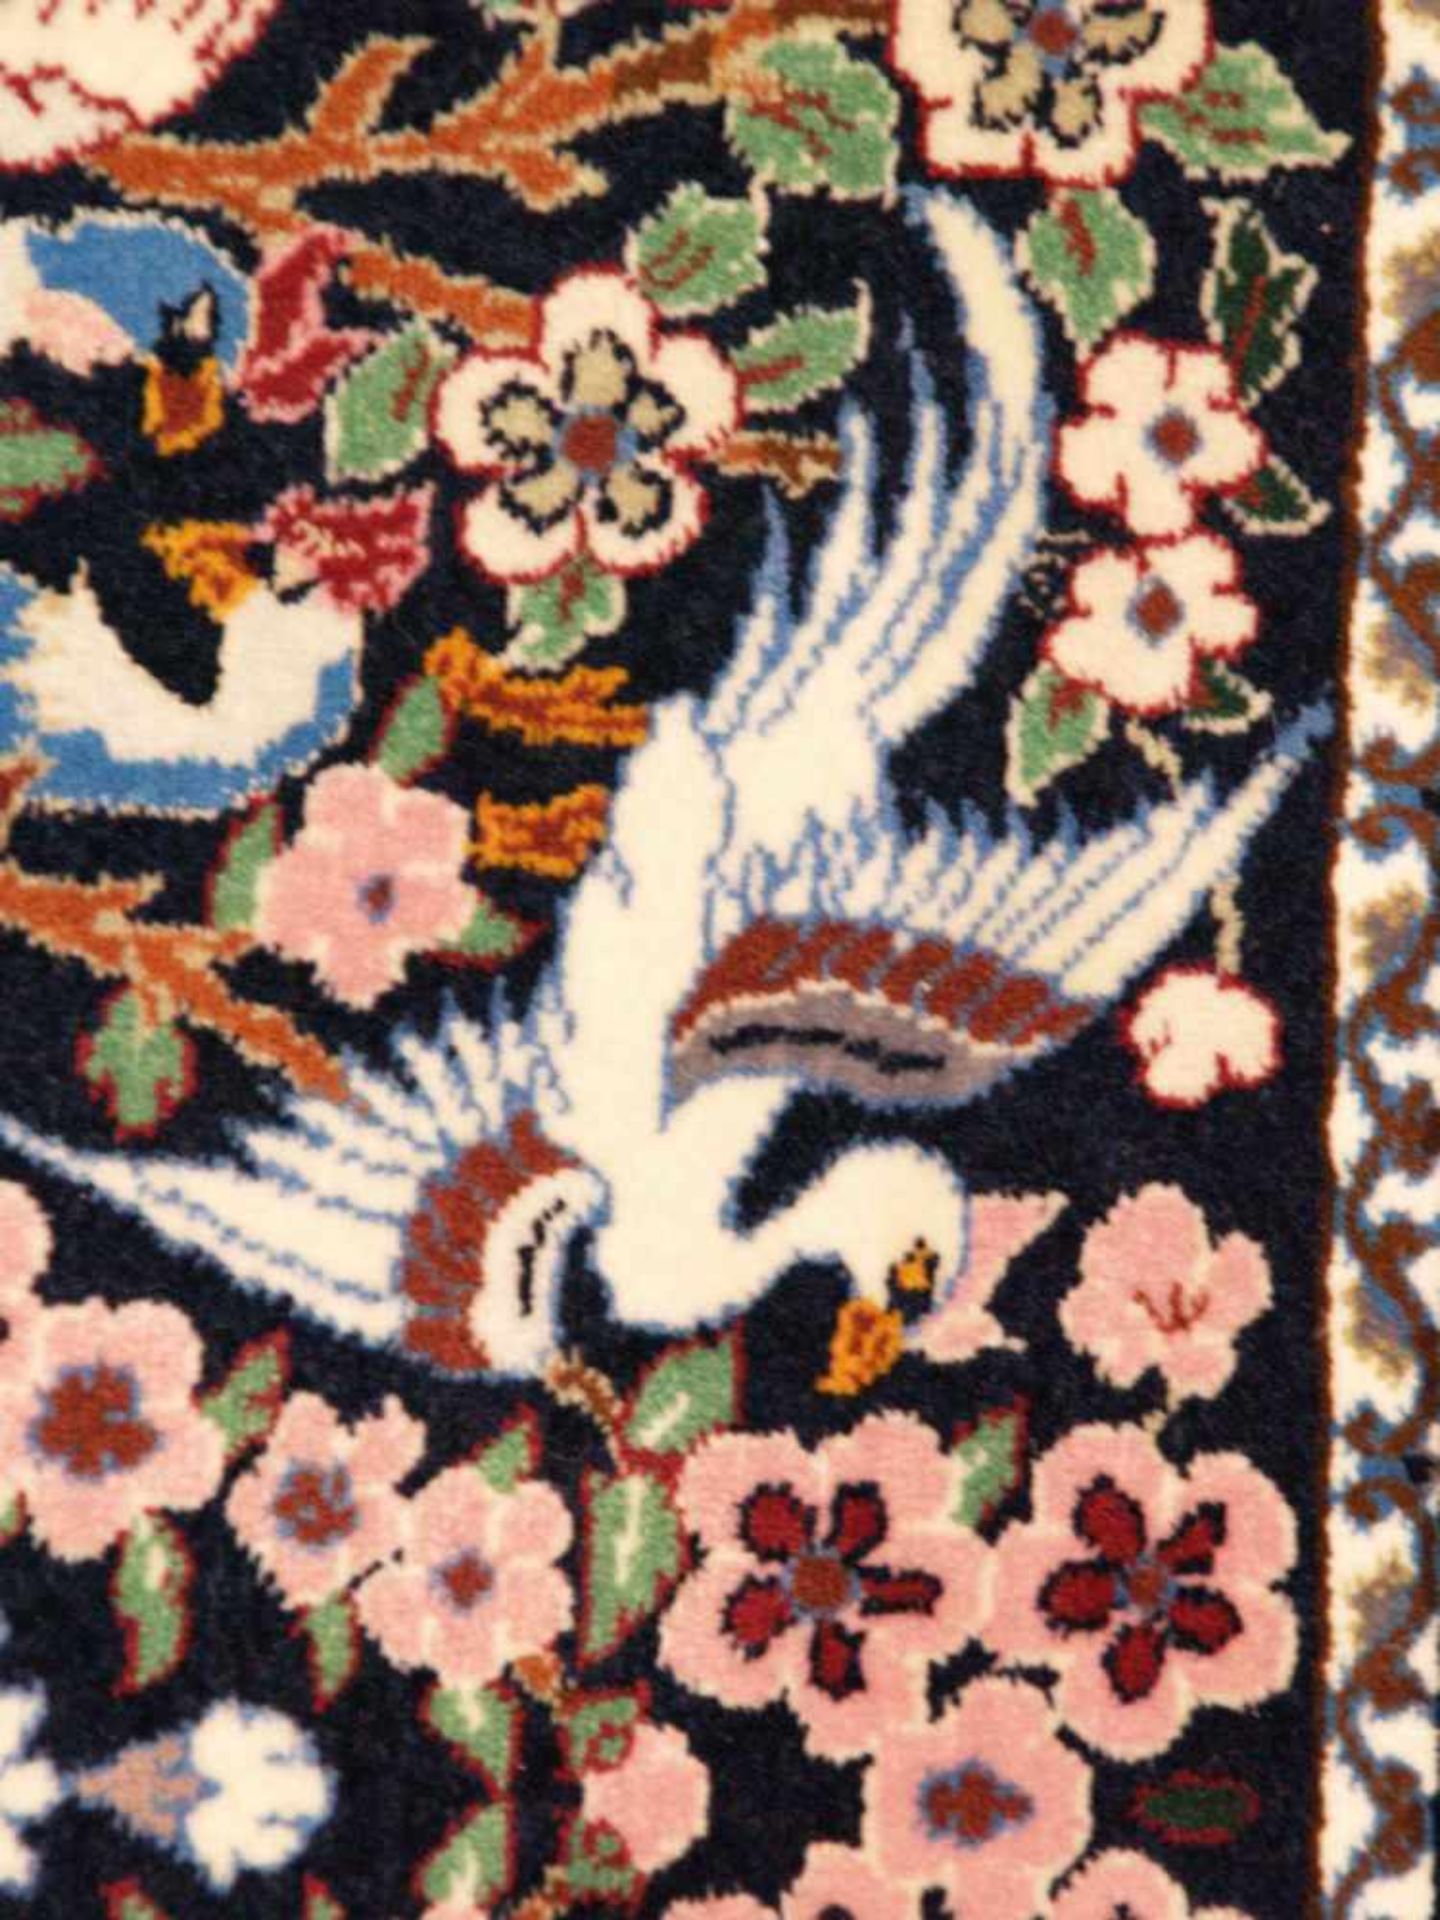 Orientteppich - Wolle und Seide, blaugrundig, zentrale florale Kartusche, gerahmt von Vögeln, - Bild 6 aus 11